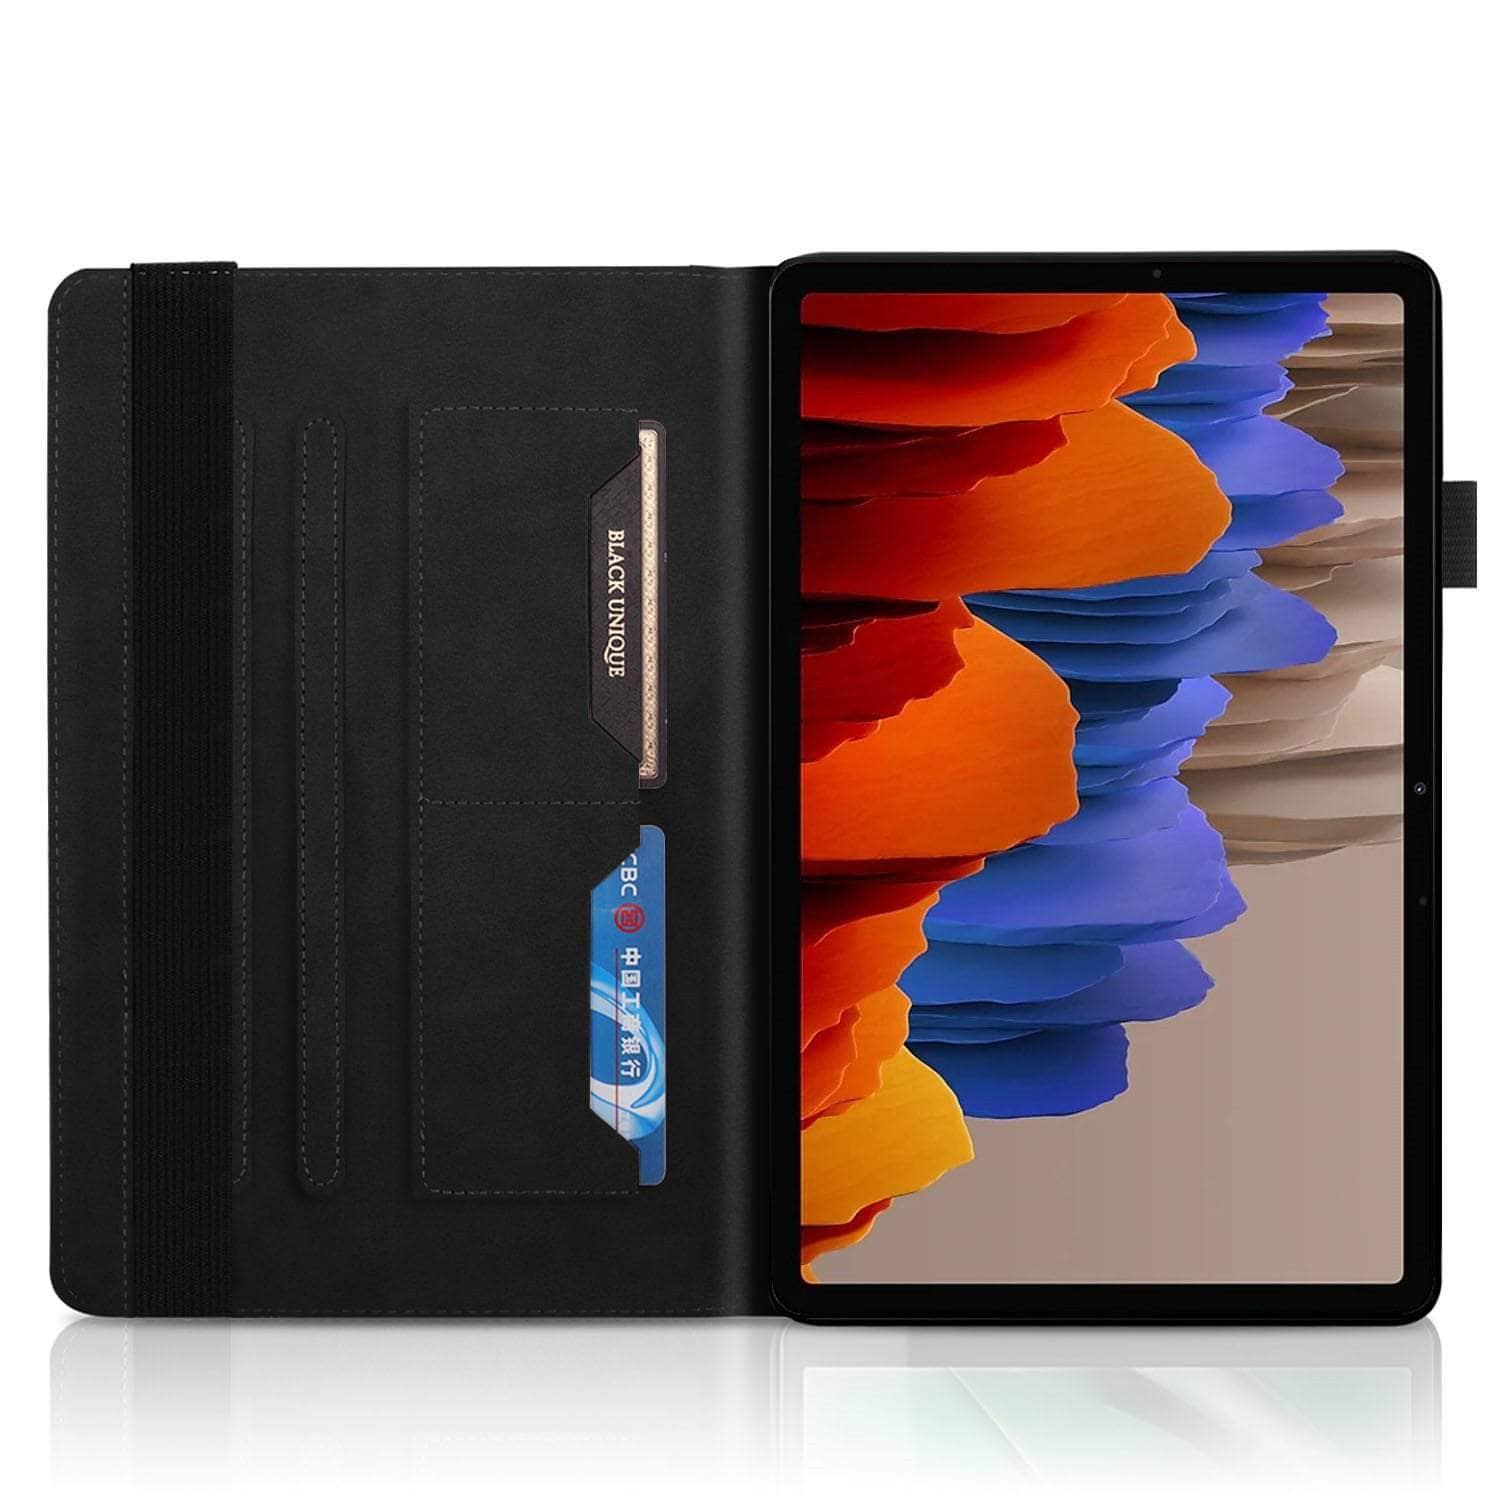 CaseBuddy Australia Casebuddy Flip Leather Galaxy Tab S8 11 X700 Case